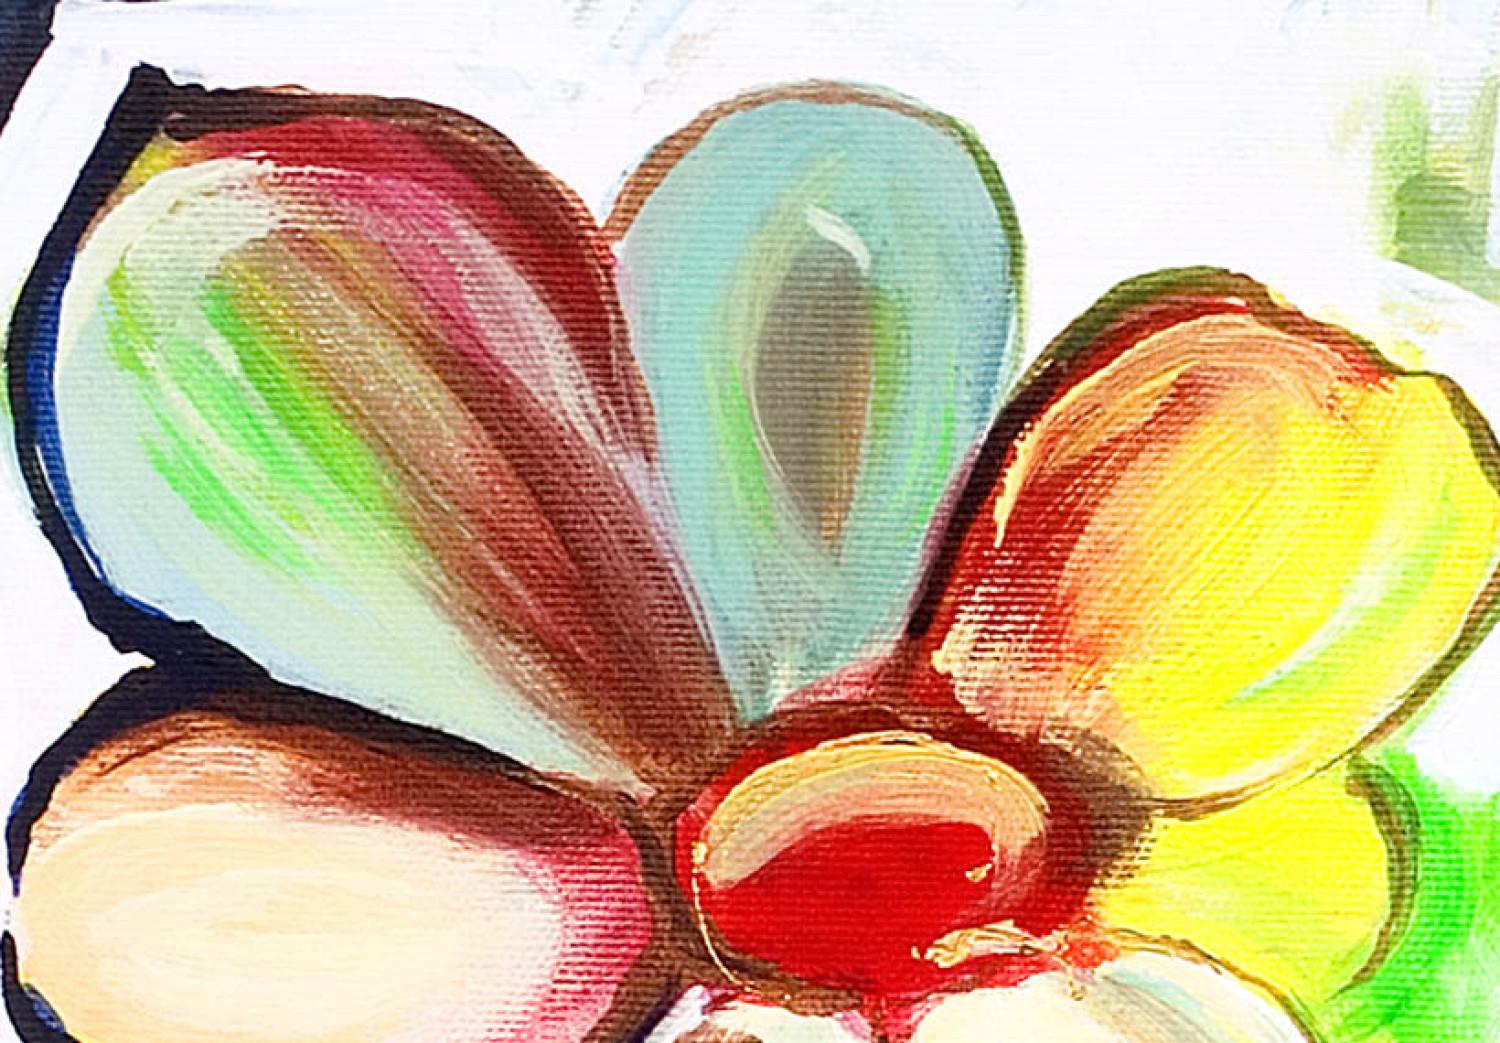 Cuadro decorativo Flores de colores (1 pieza) - pradera fantasiosa en tonos jugosos